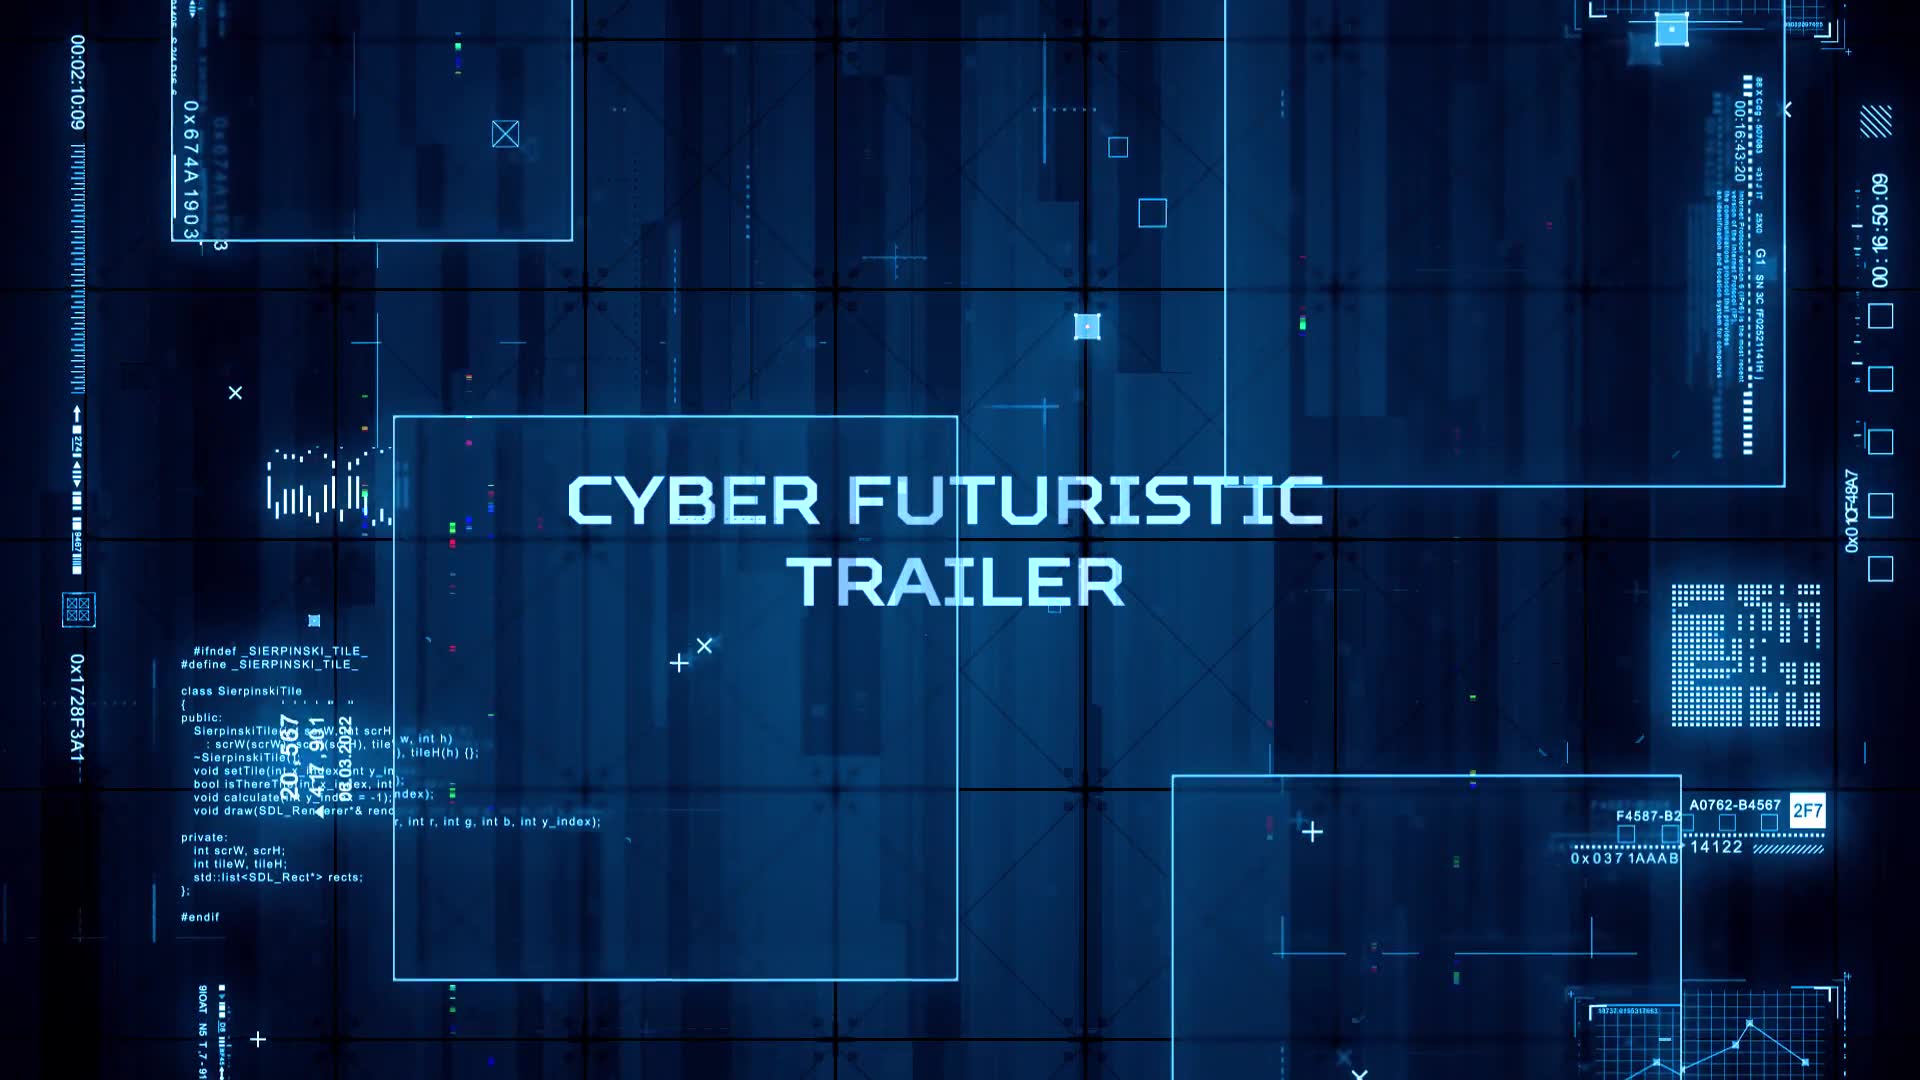 Cyber Futuristic Trailer Videohive 38919212 Premiere Pro Image 8